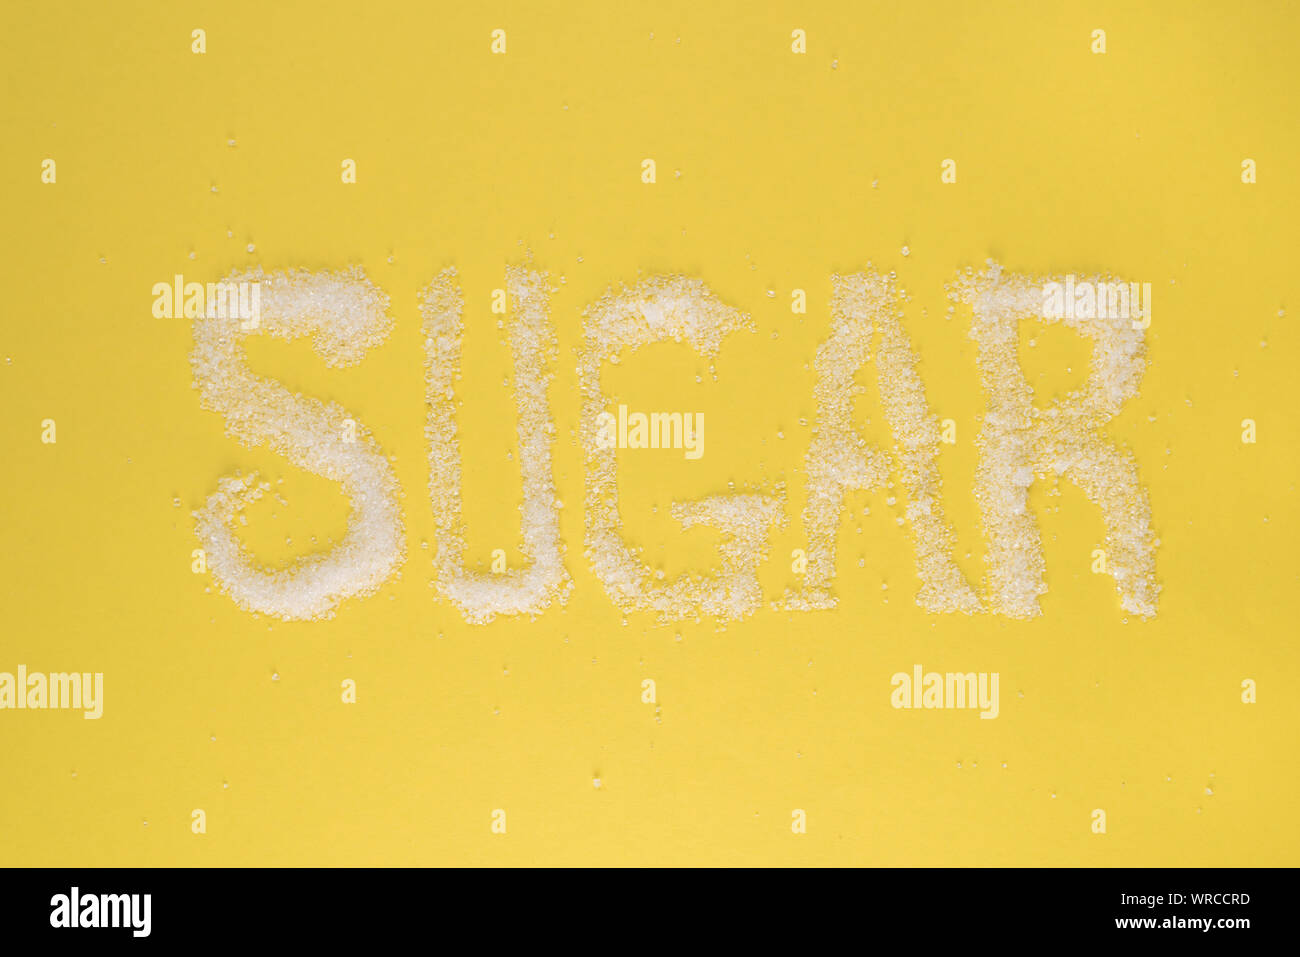 Zucker auf gelben Hintergrund geschrieben. Konzept der Diabetes, ungesunde Ernährung und Gesundheit Stockfoto